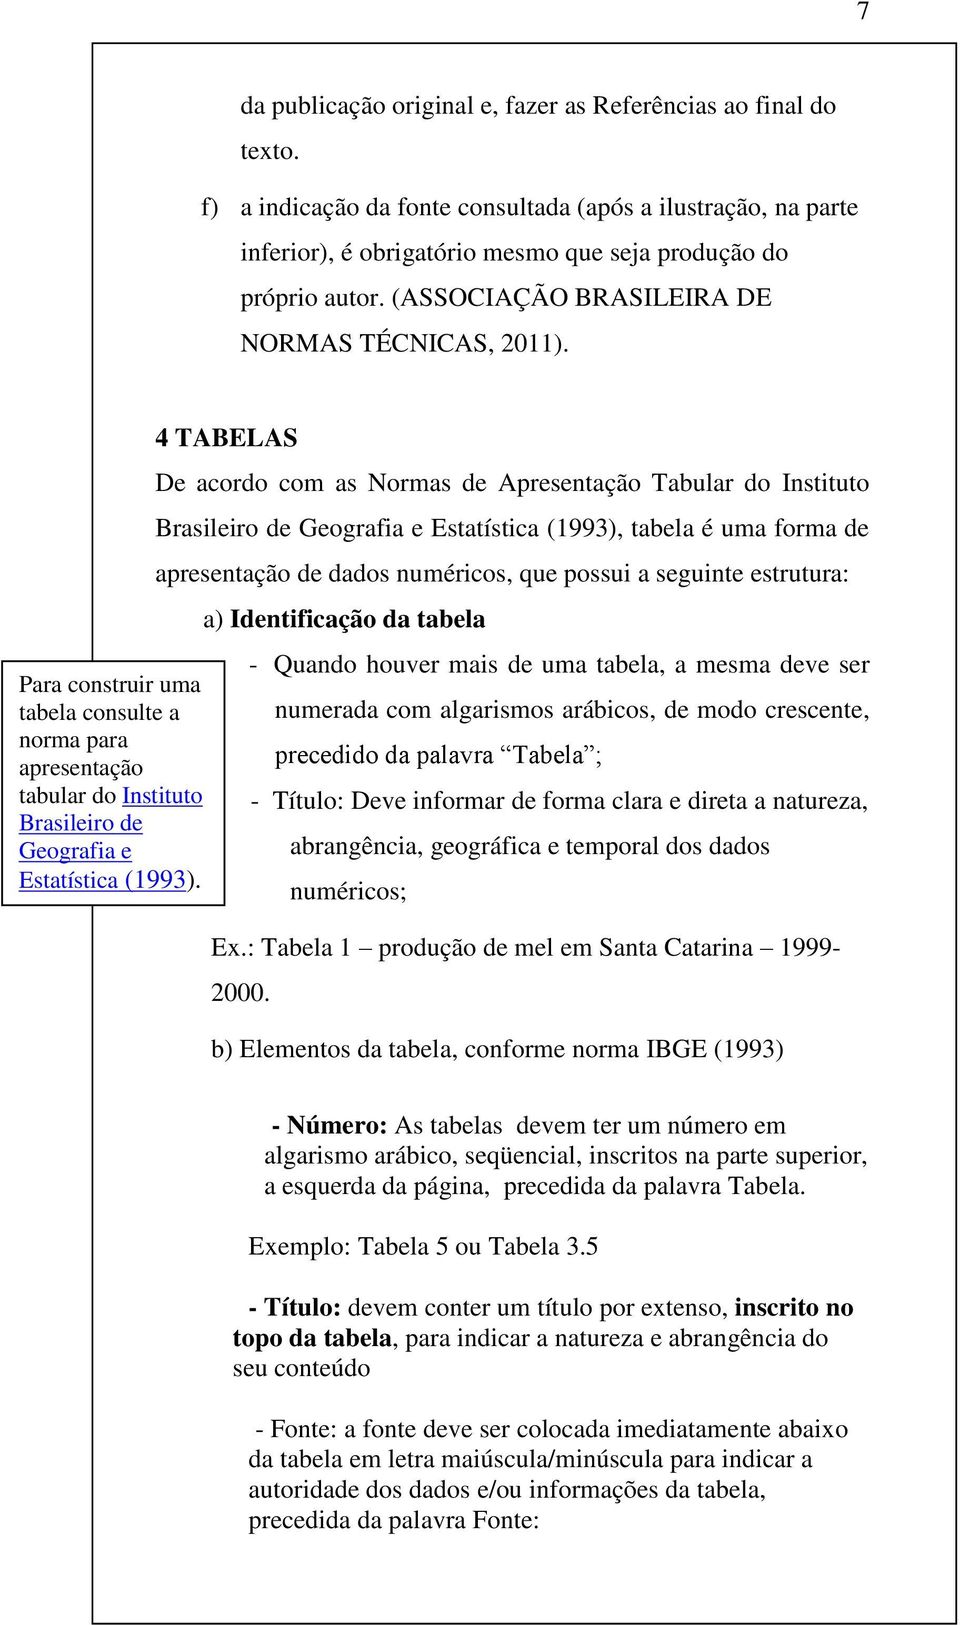 4 TABELAS De acordo com as Normas de Apresentação Tabular do Instituto Brasileiro de Geografia e Estatística (1993), tabela é uma forma de apresentação de dados numéricos, que possui a seguinte